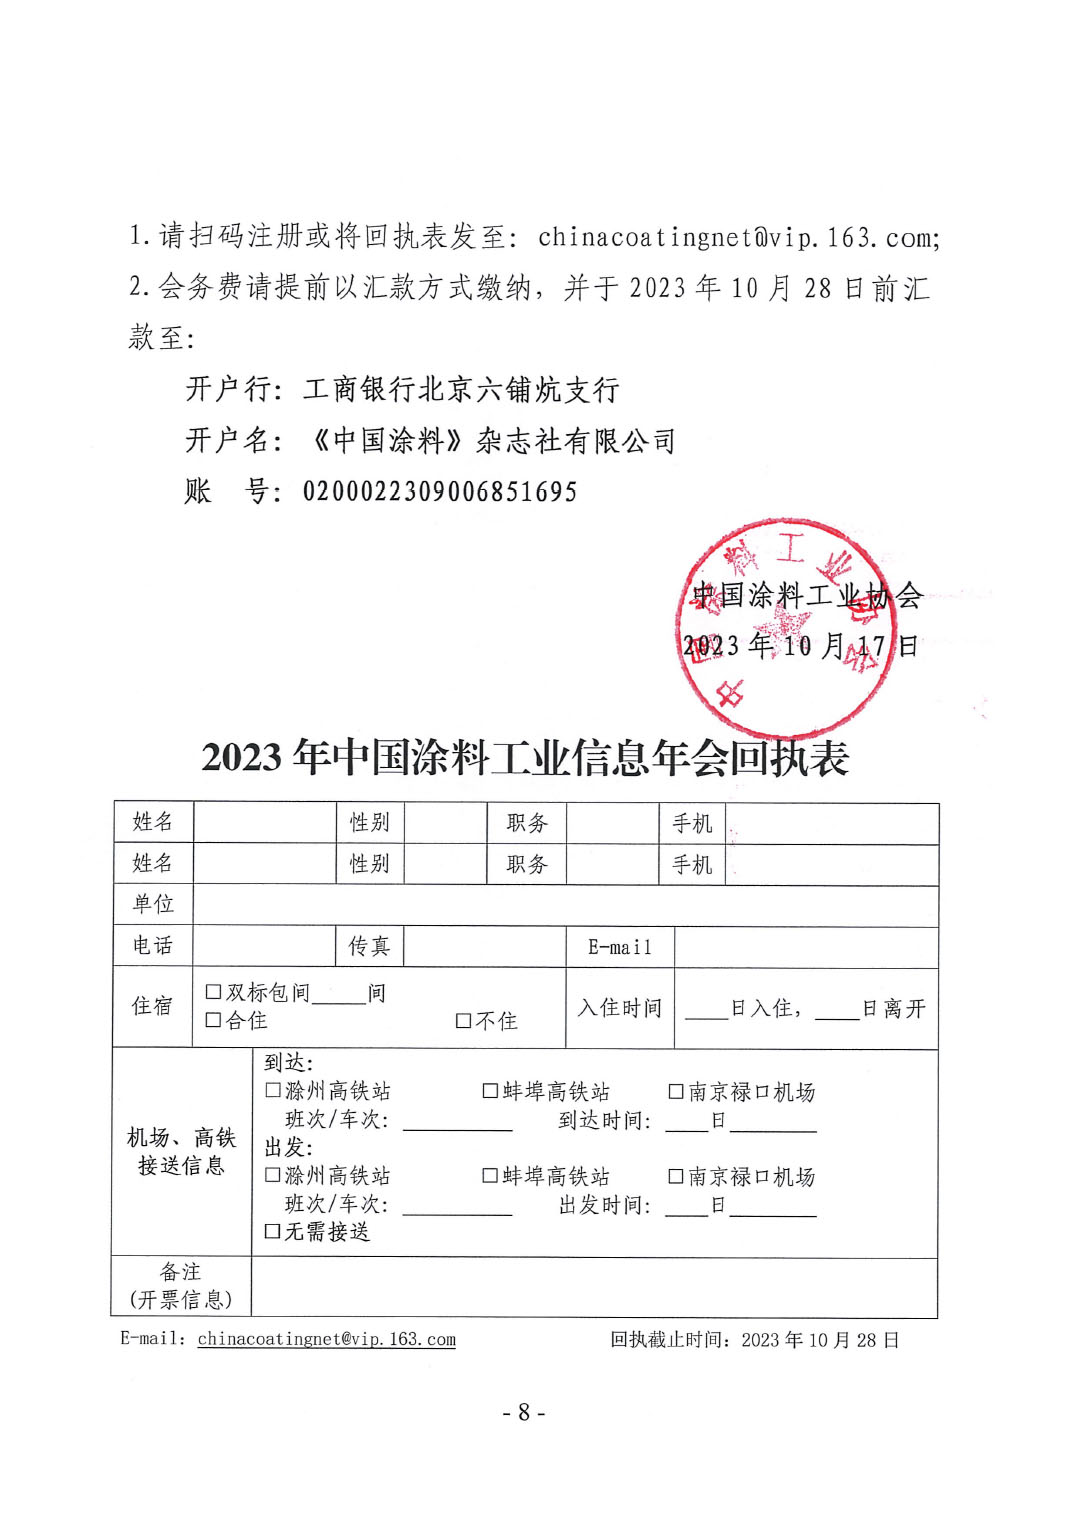 2023年中国涂料工业信息年会通知（明光）1017-8